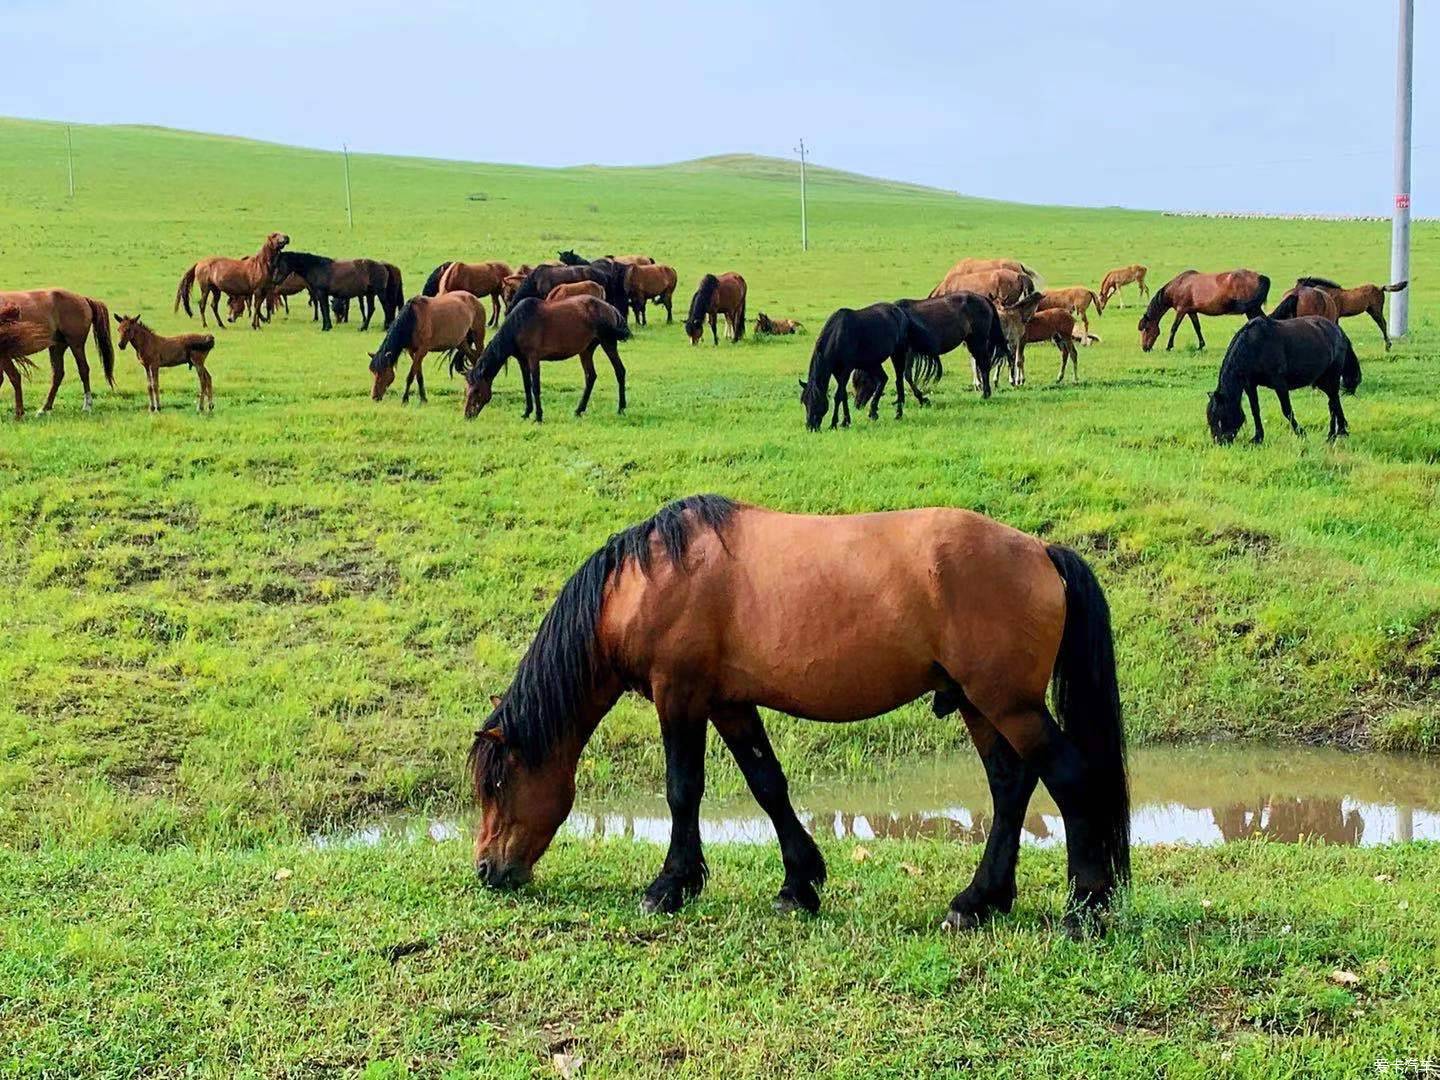 成群的马儿在一望无际的大草原享受着美食,尽情的吃草,享受着美食的